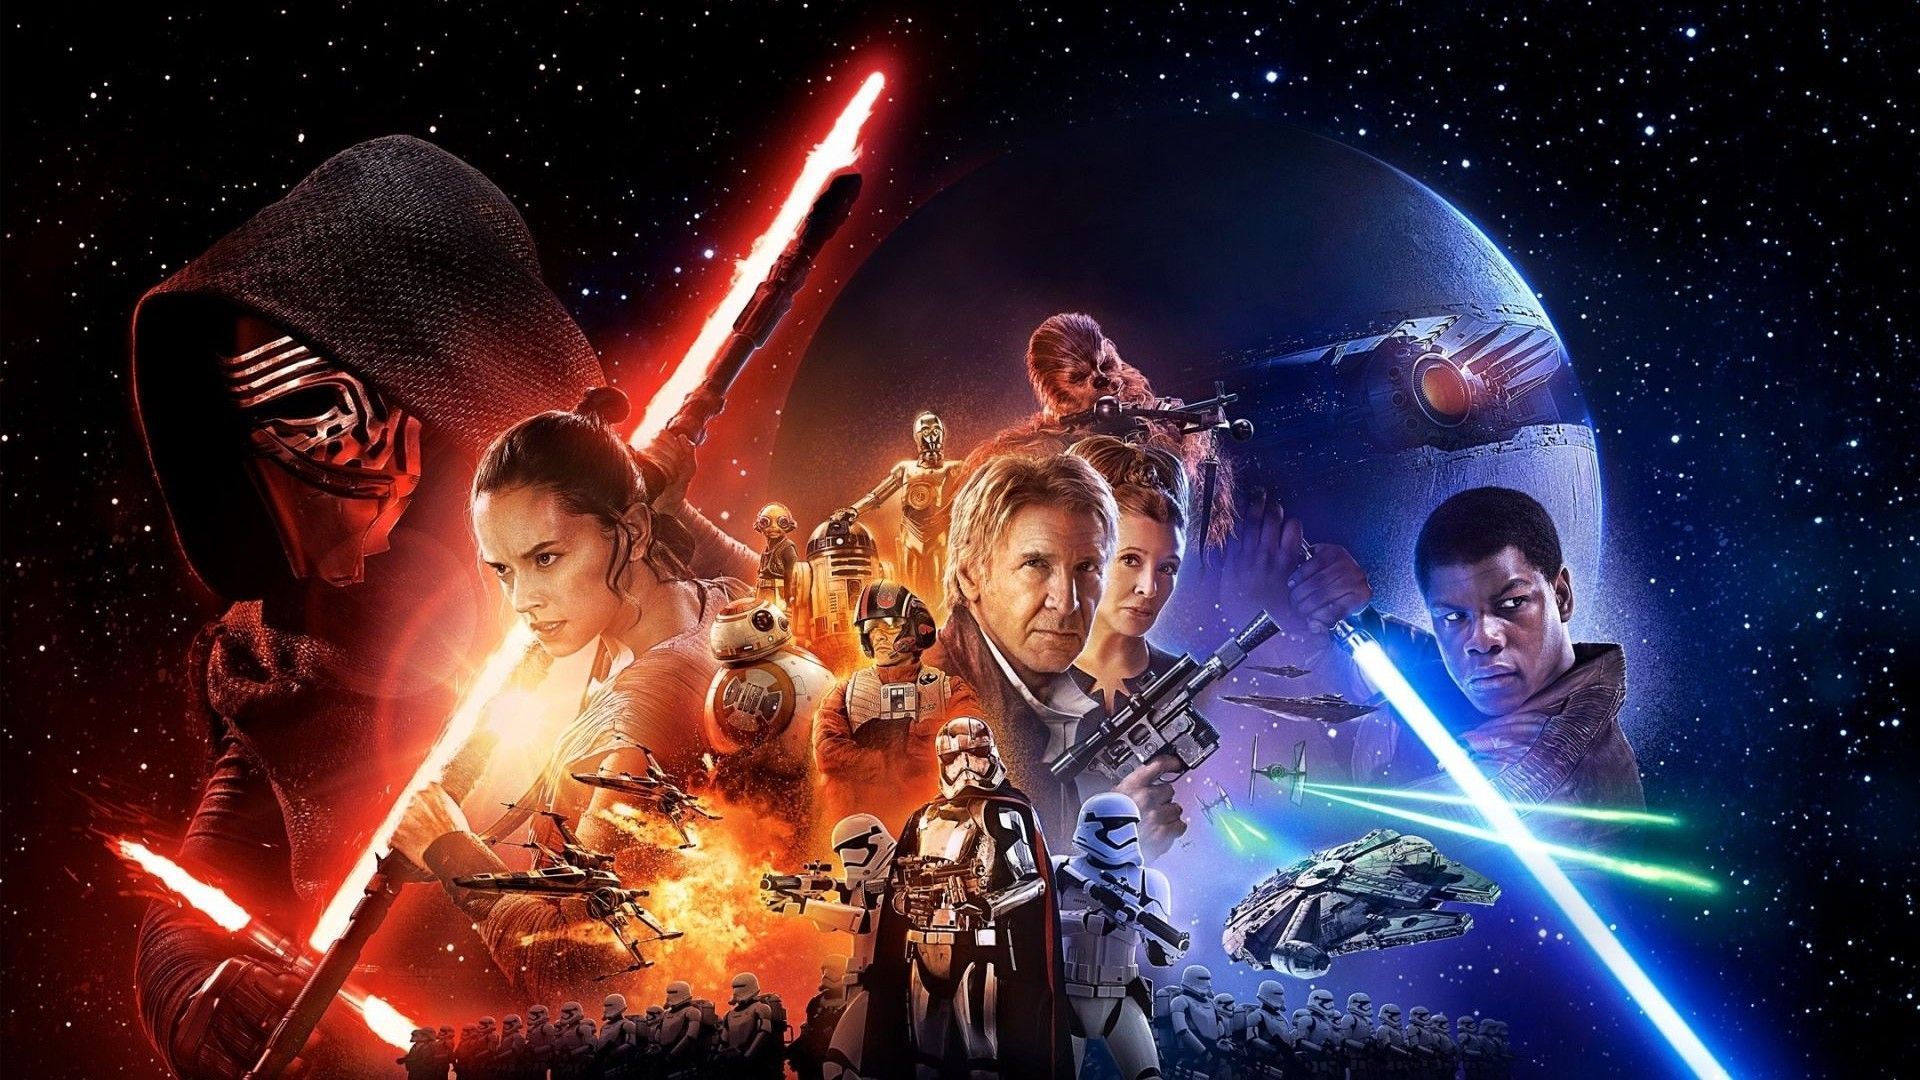 Star Wars - The Force Awakens wallpaper - HD Wallpaper Expert